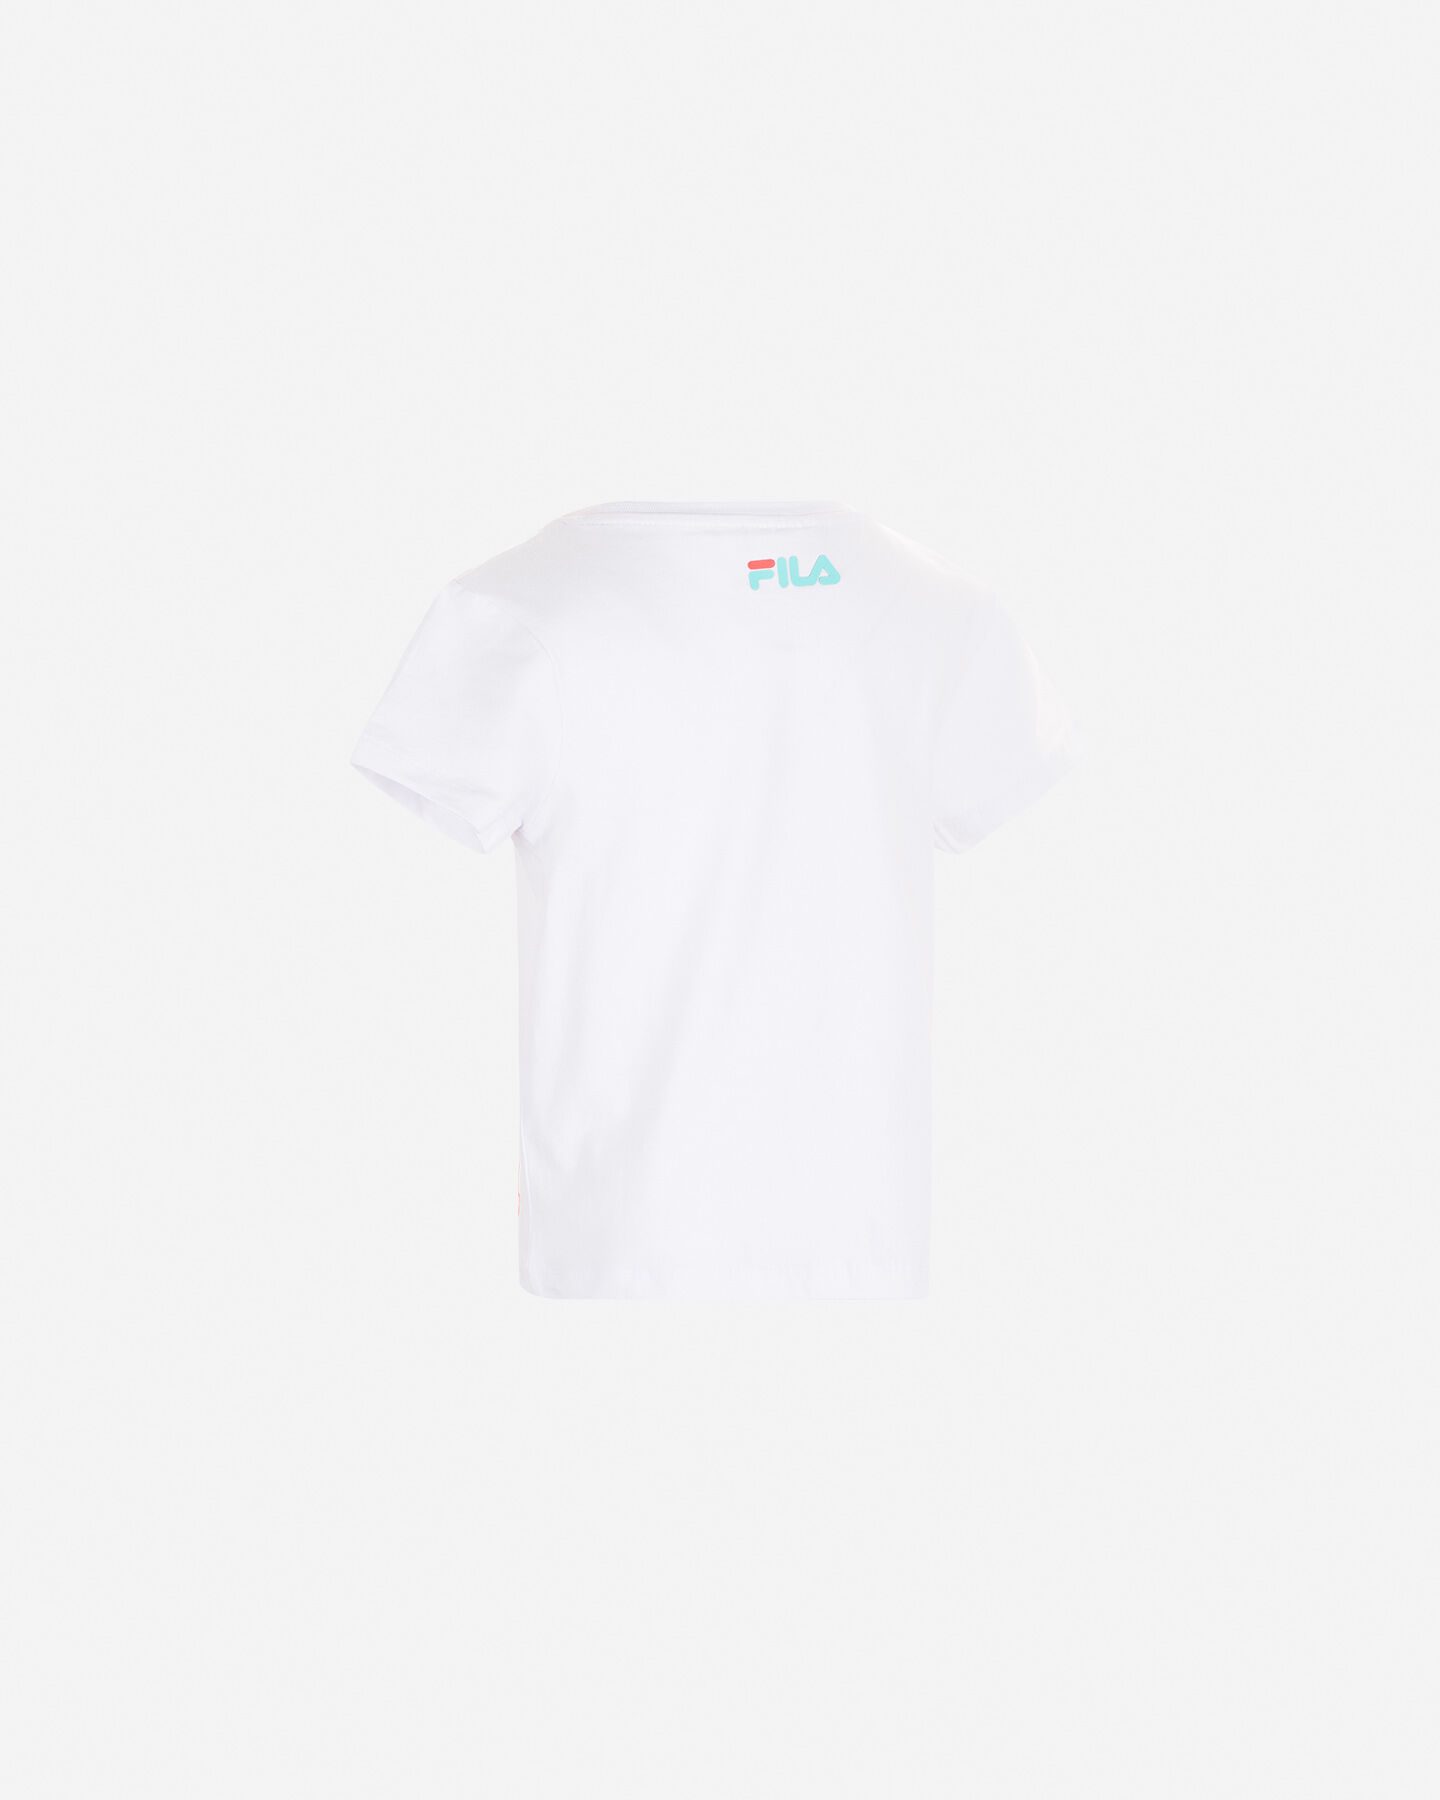  T-Shirt FILA COLOR BLOCK JR S4088706|001/639|4A scatto 1